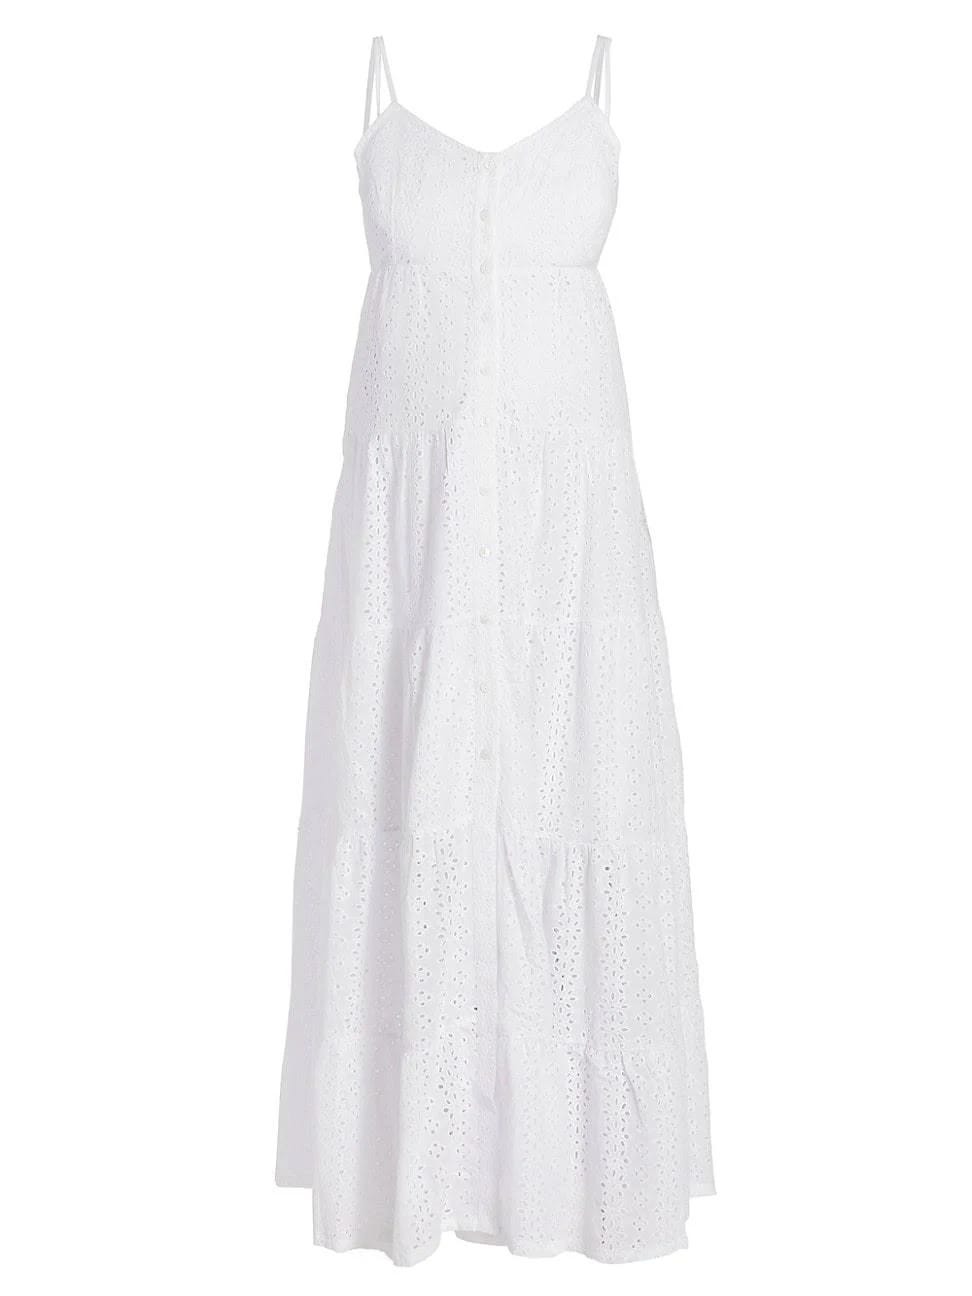 Stylish White Eyelet Maternity Maxi Dress | Image